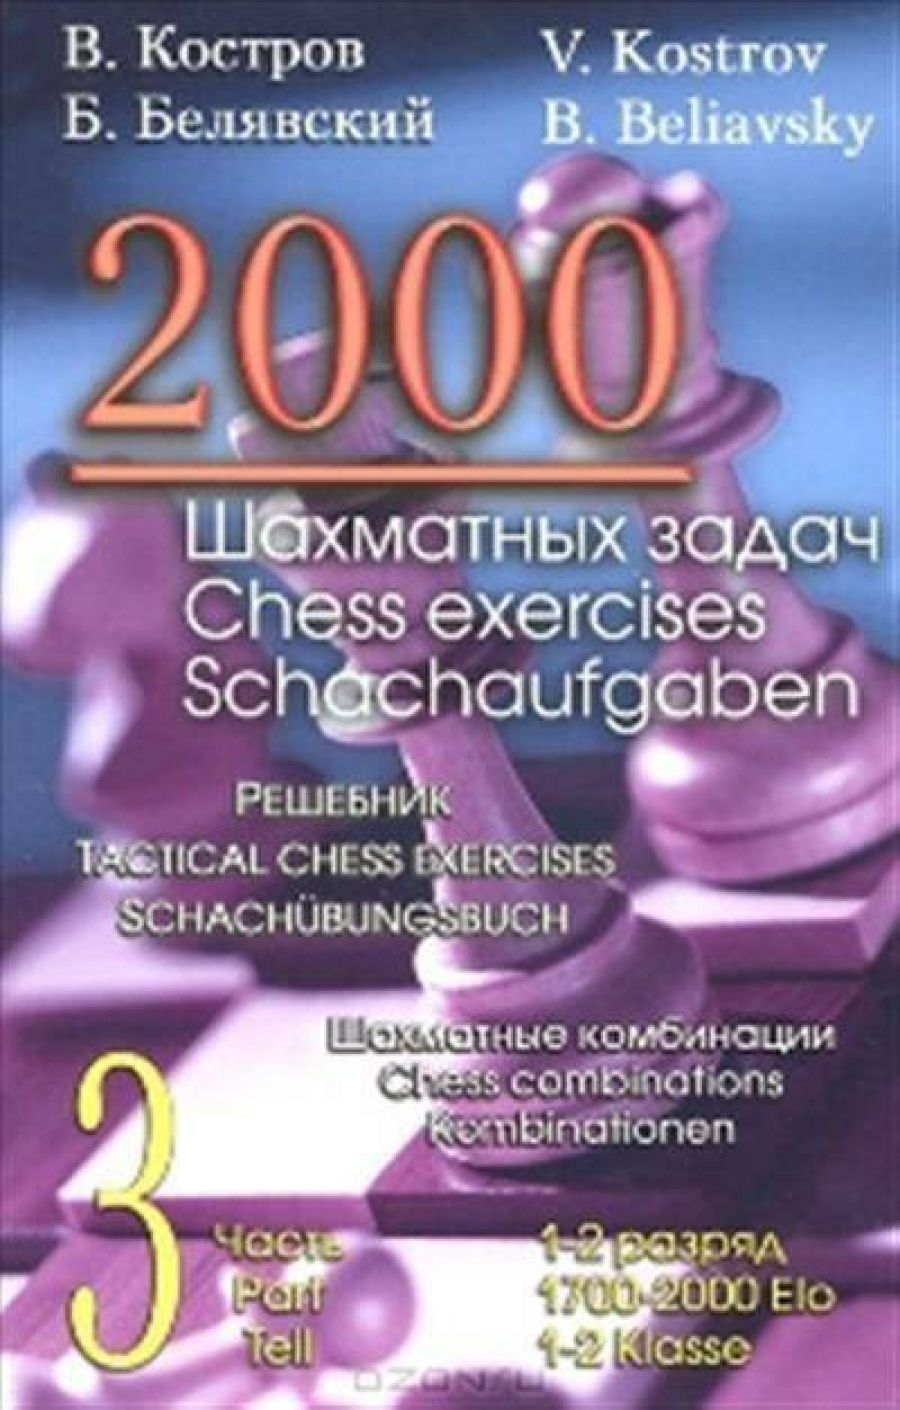 Костров 2000 шахматных задач. 3 часть 